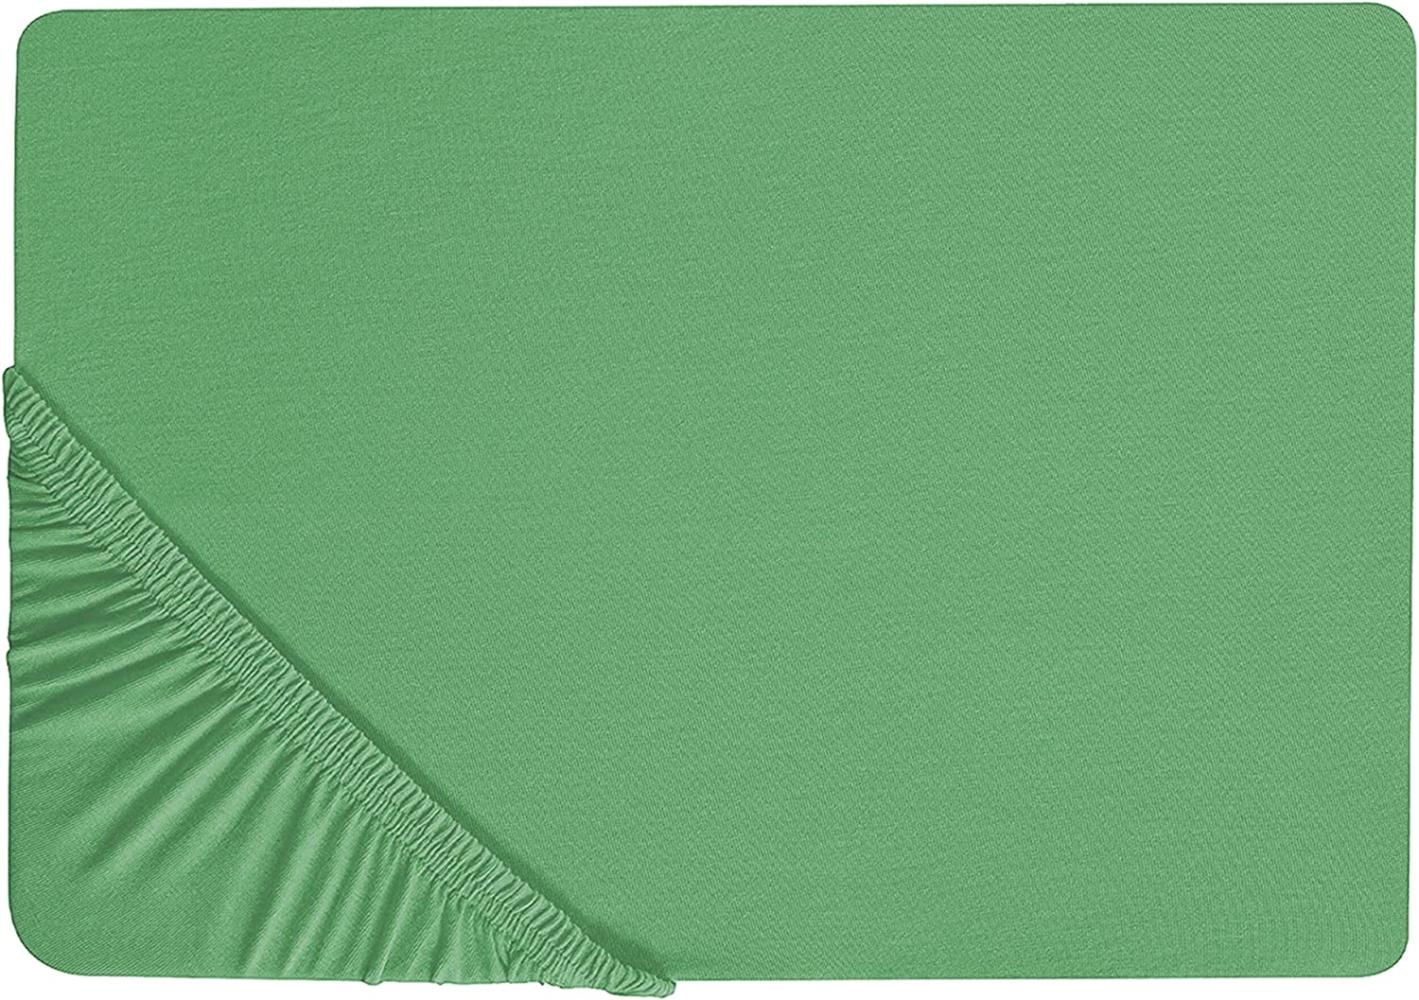 Spannbettlaken Baumwolle grün 140 x 200 cm JANBU Bild 1